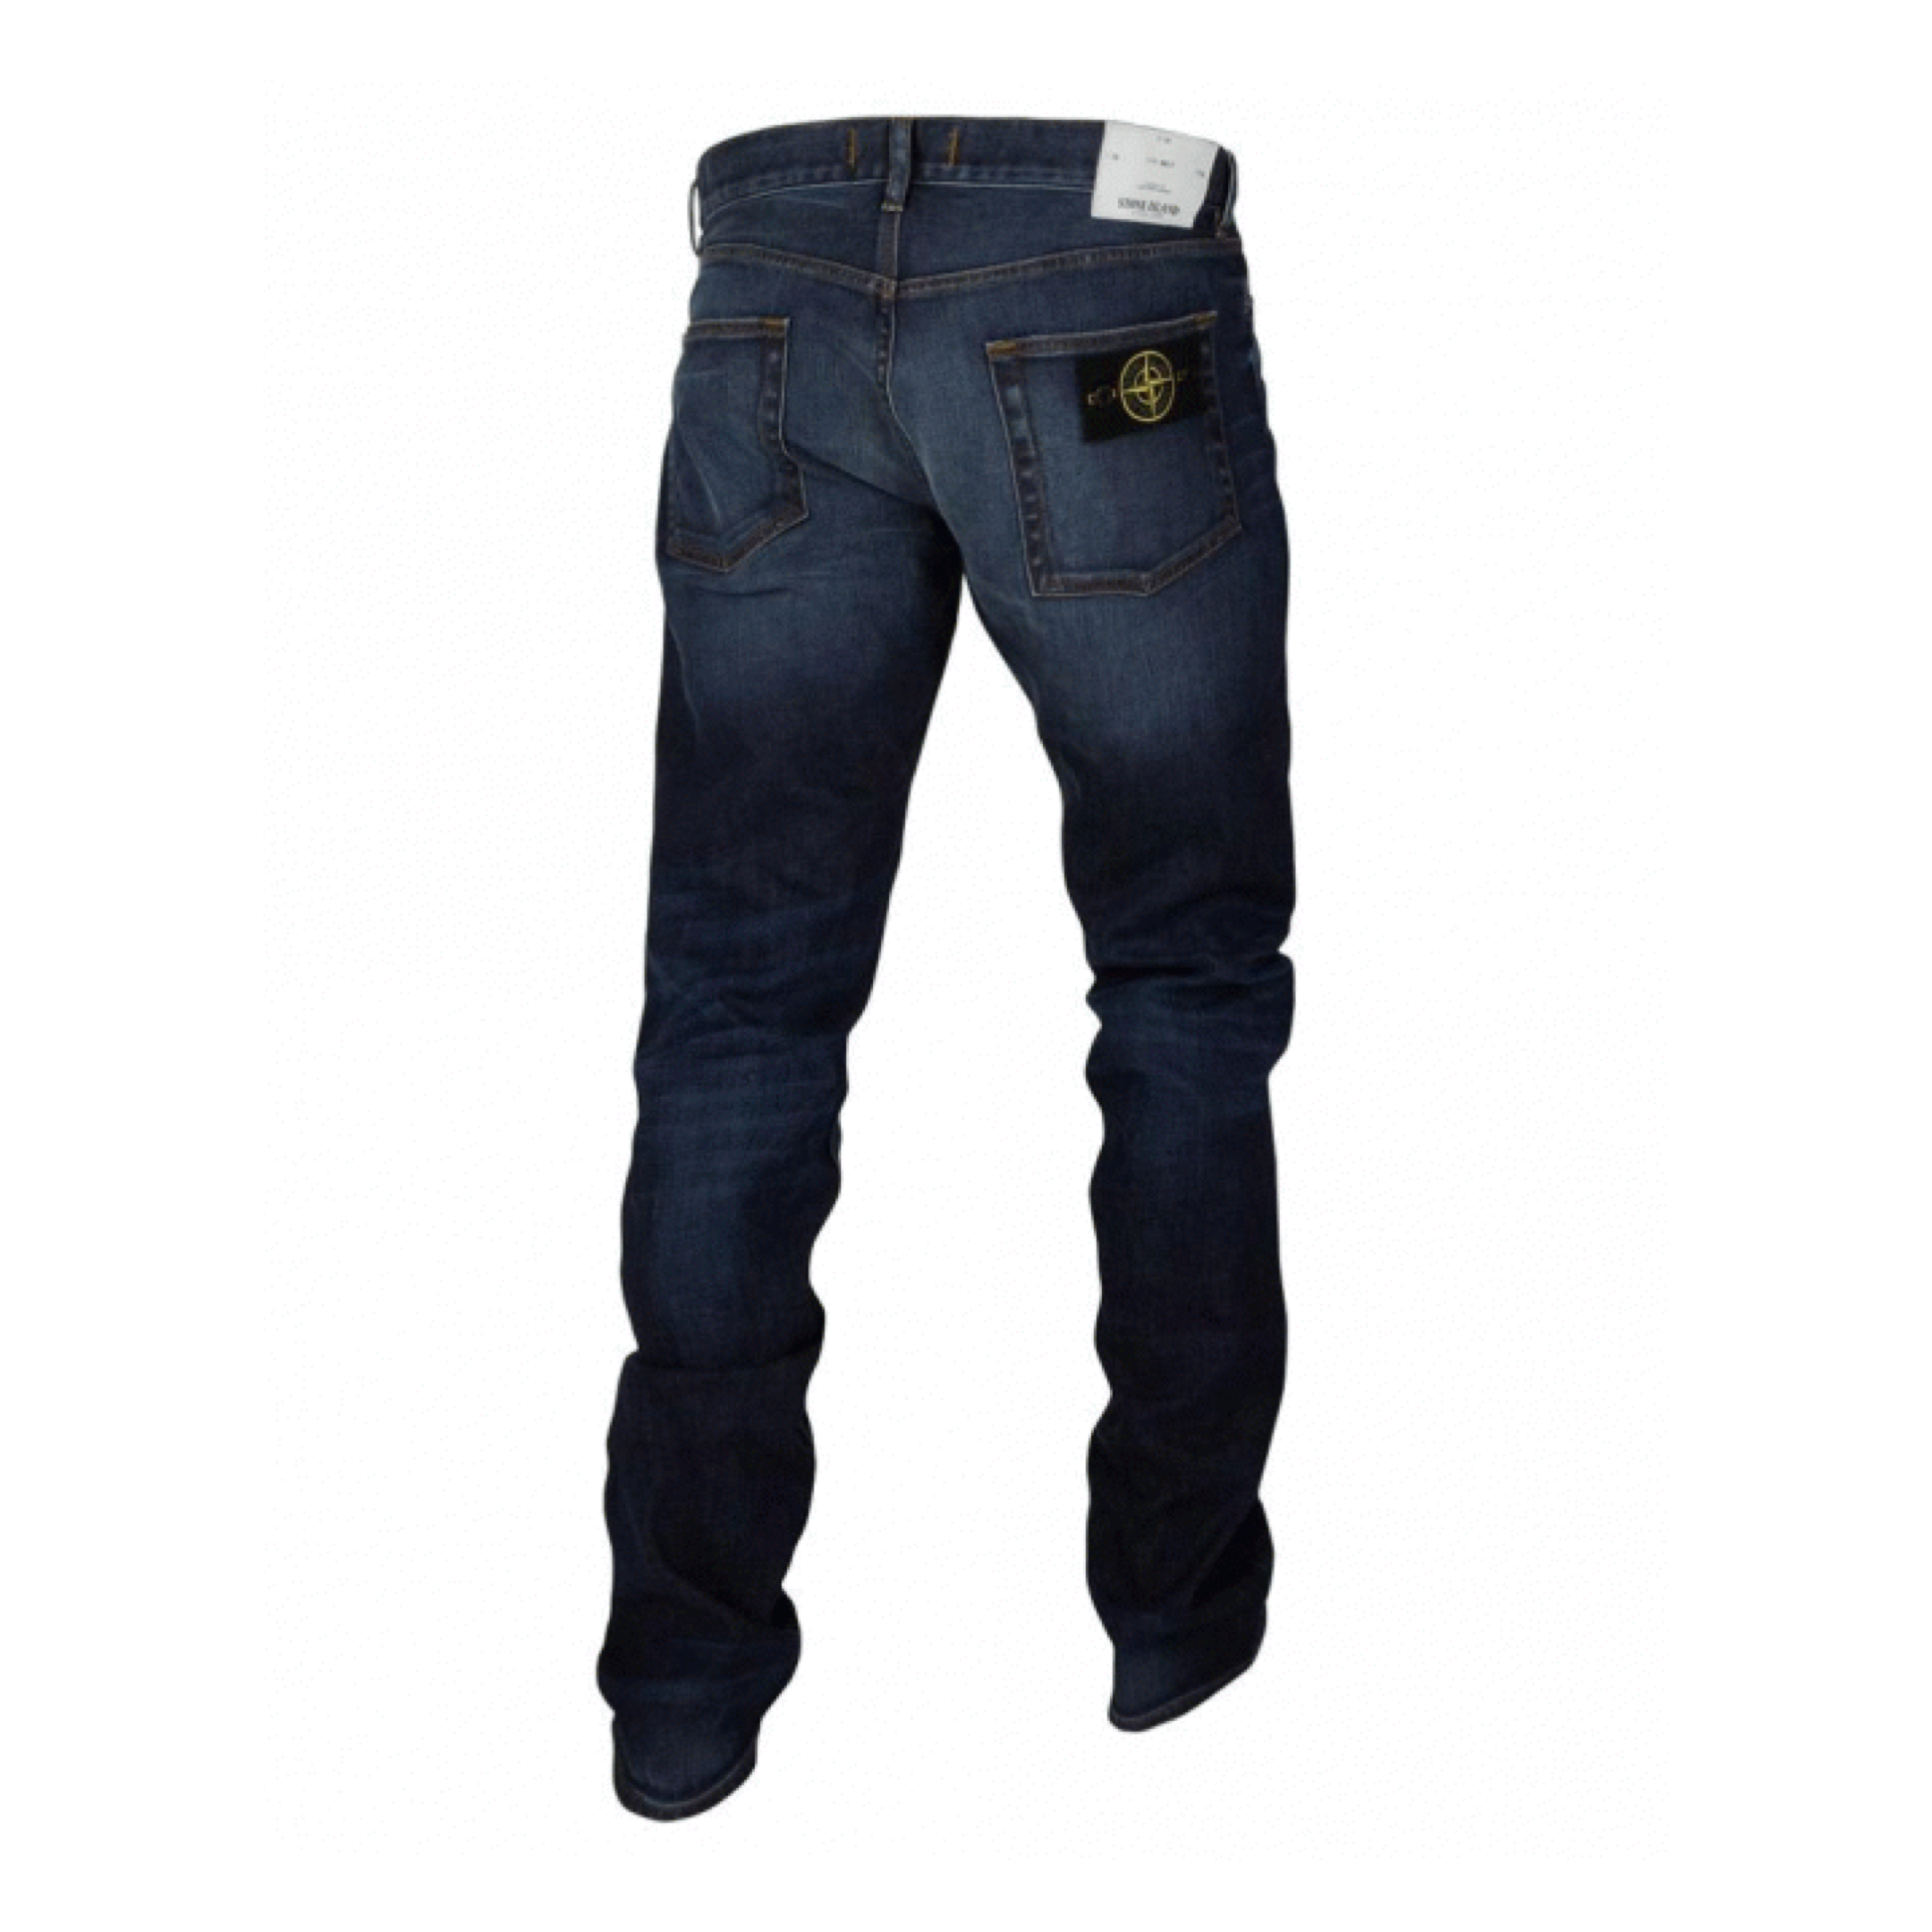 Island Pants Jeans 5 Pockets UA Fashion